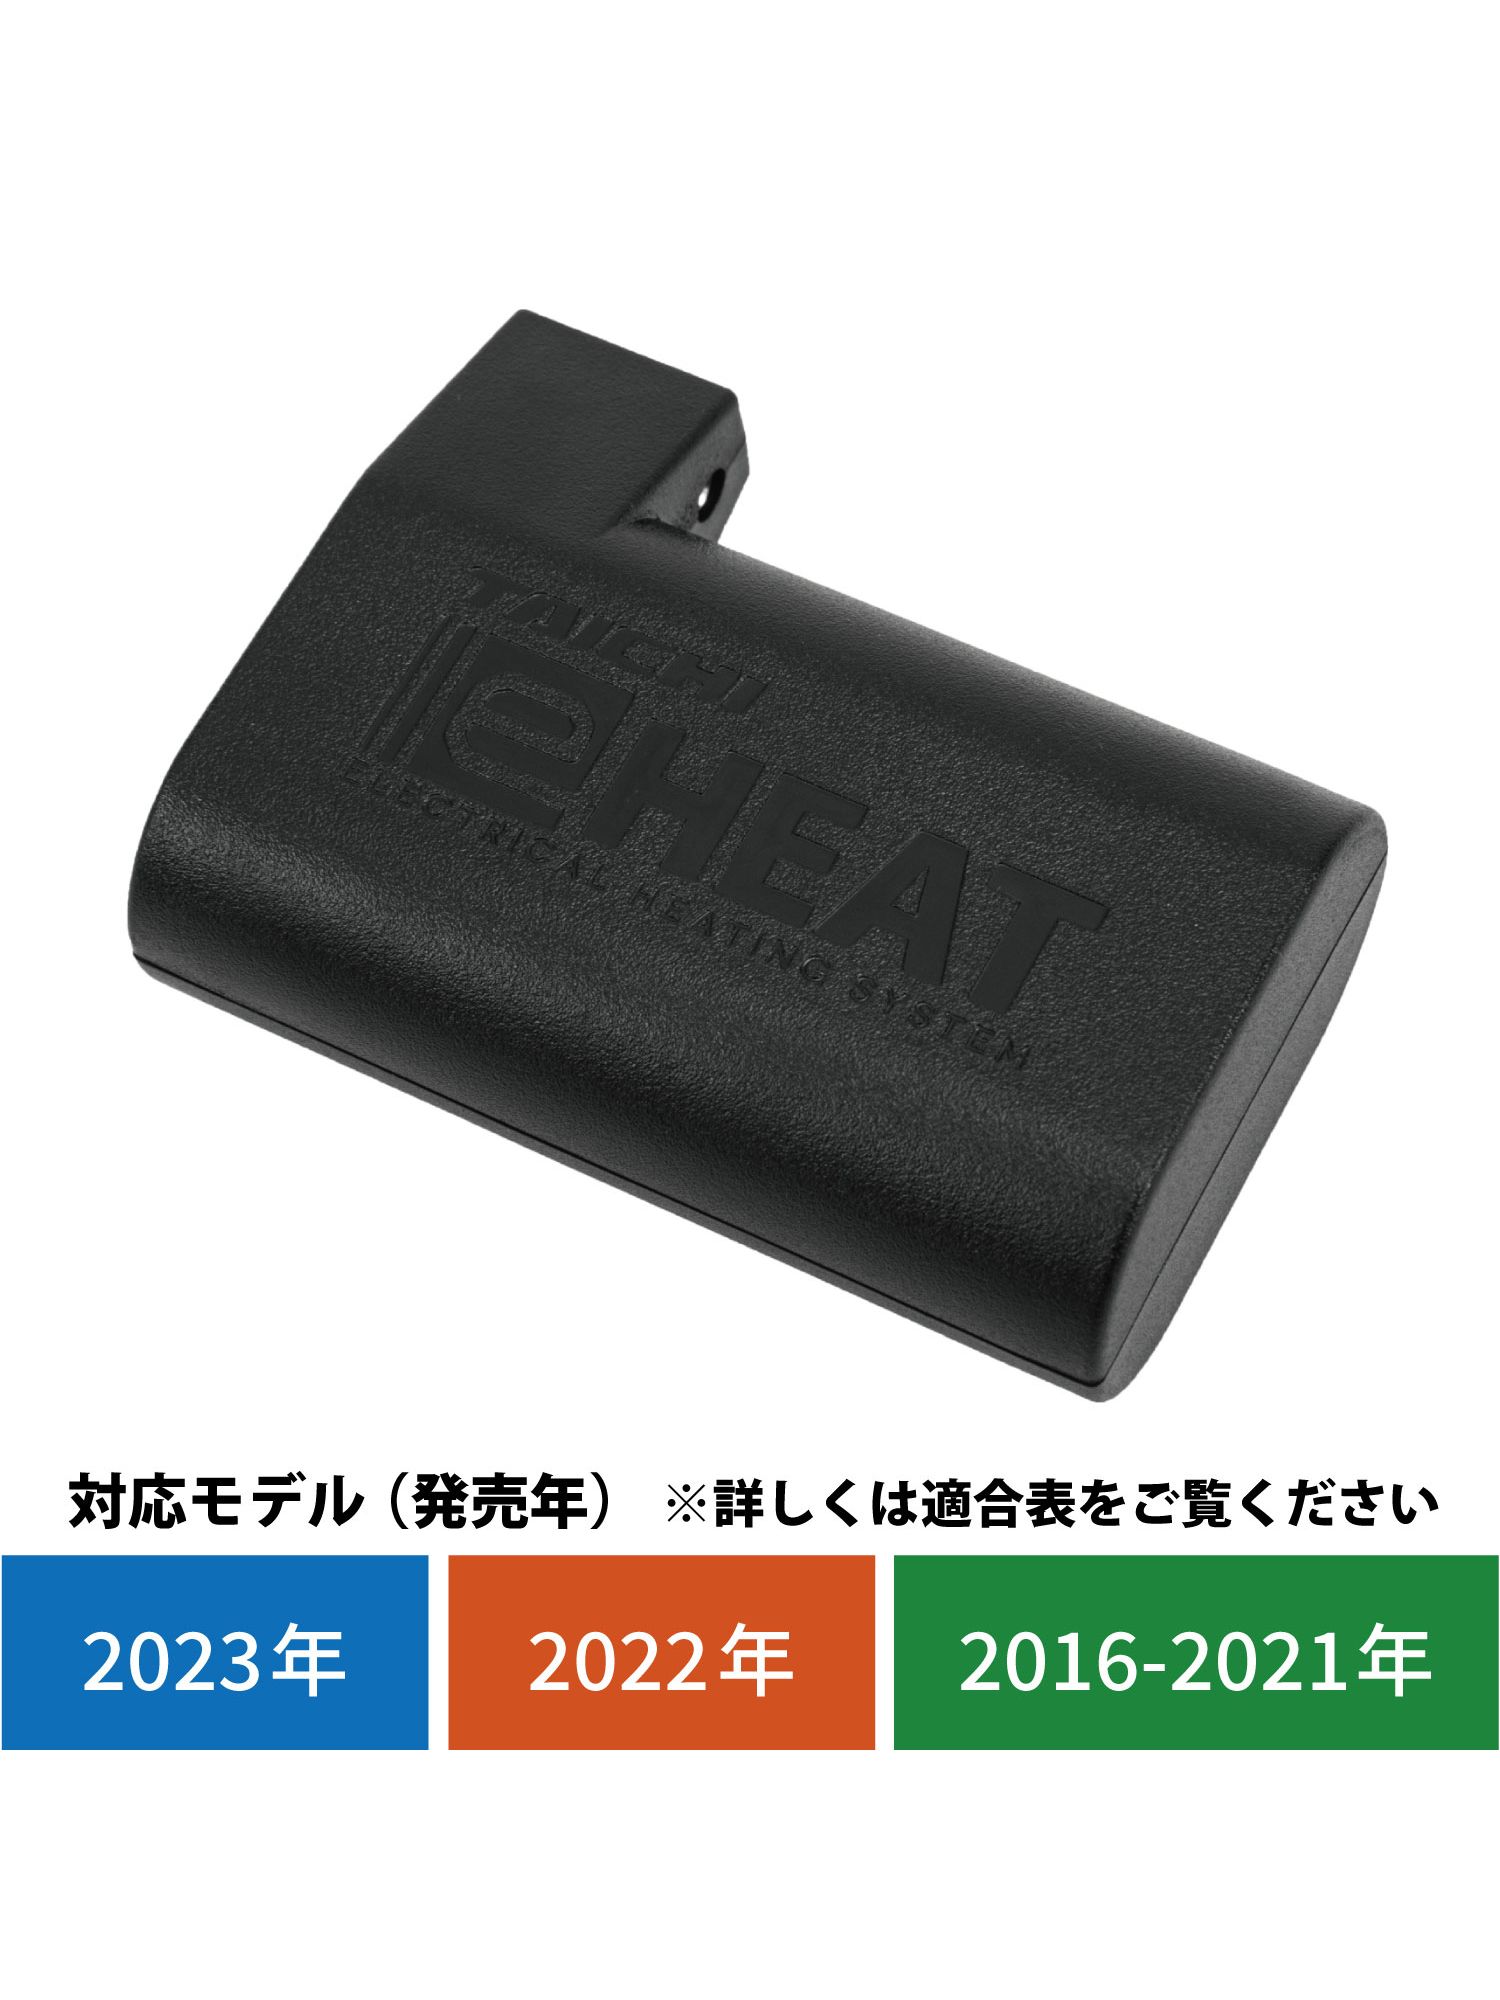 タイチ公式通販】RSP065 | e-HEAT 7.2V専用バッテリー:1個 | TAICHI